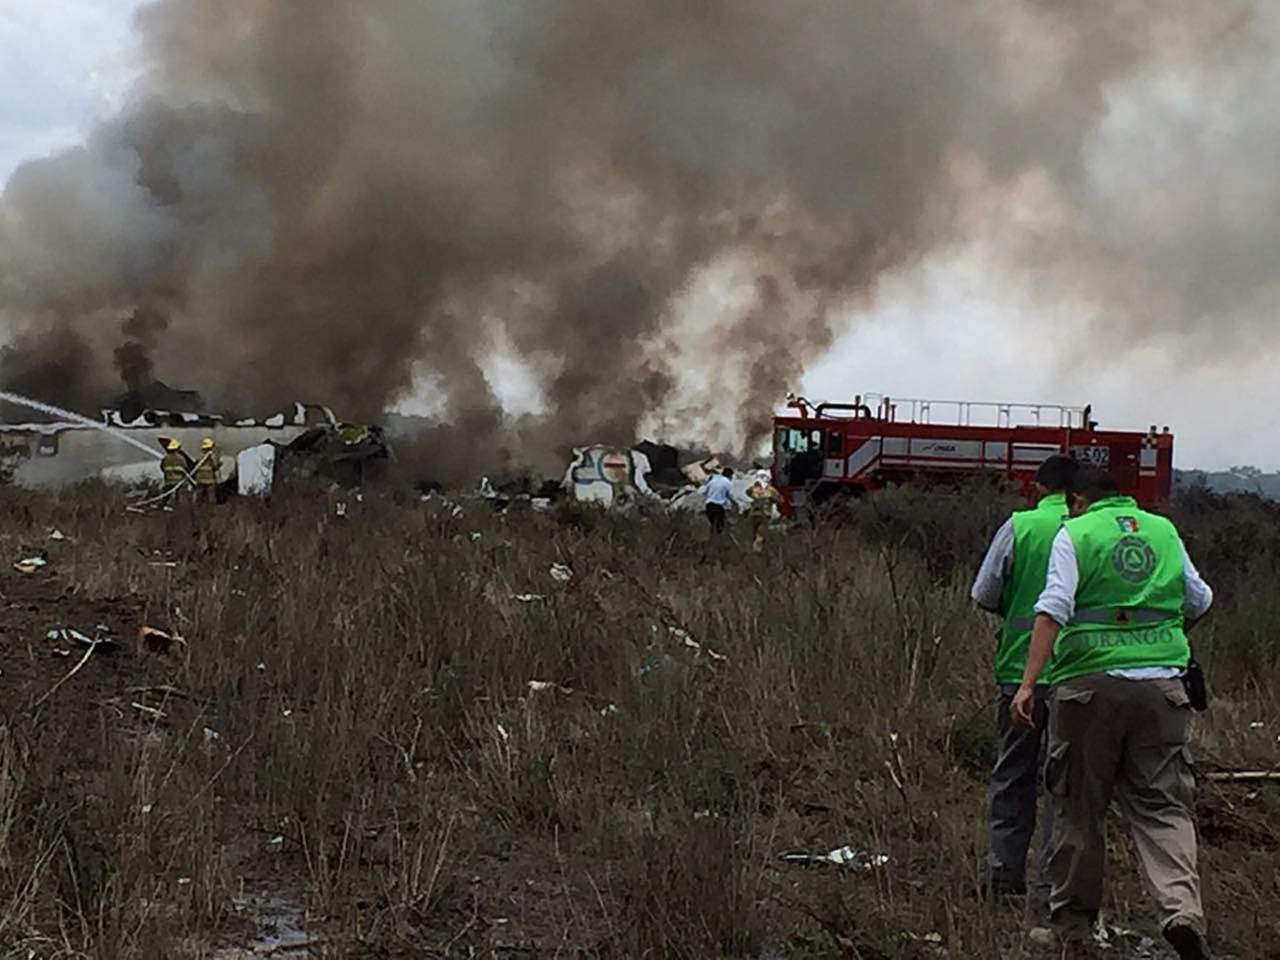 El avión E190 de Aeroméxico se accidentó cerca de las 15:00 horas locales (21:00 GMT) del martes, poco después de despegar del aeropuerto de Durango, con 103 personas a bordo, de ellos 97 pasajeros, sin víctimas fatales. (ARCHIVO)
